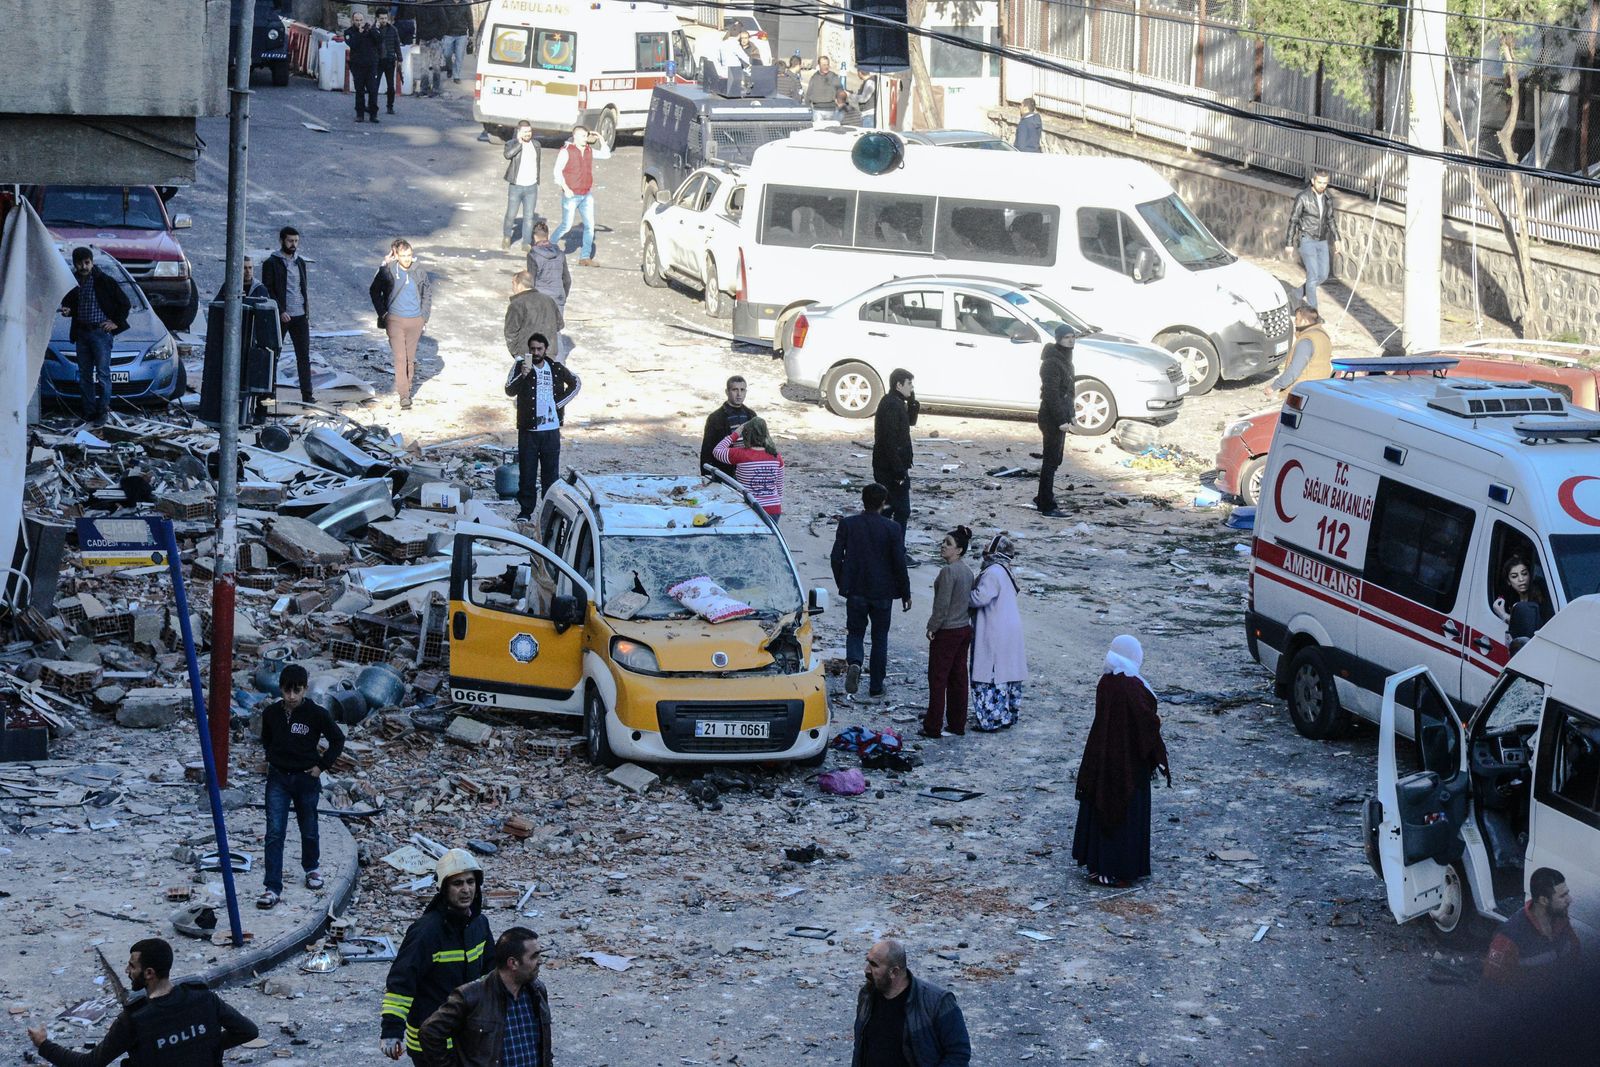 تجمع للسكان في محيط موقع انفجار نفذه عناصر من حزب العمال في مدينة ديار بكر جنوب شرق تركيا - 4 نوفمبر 2016 - AFP